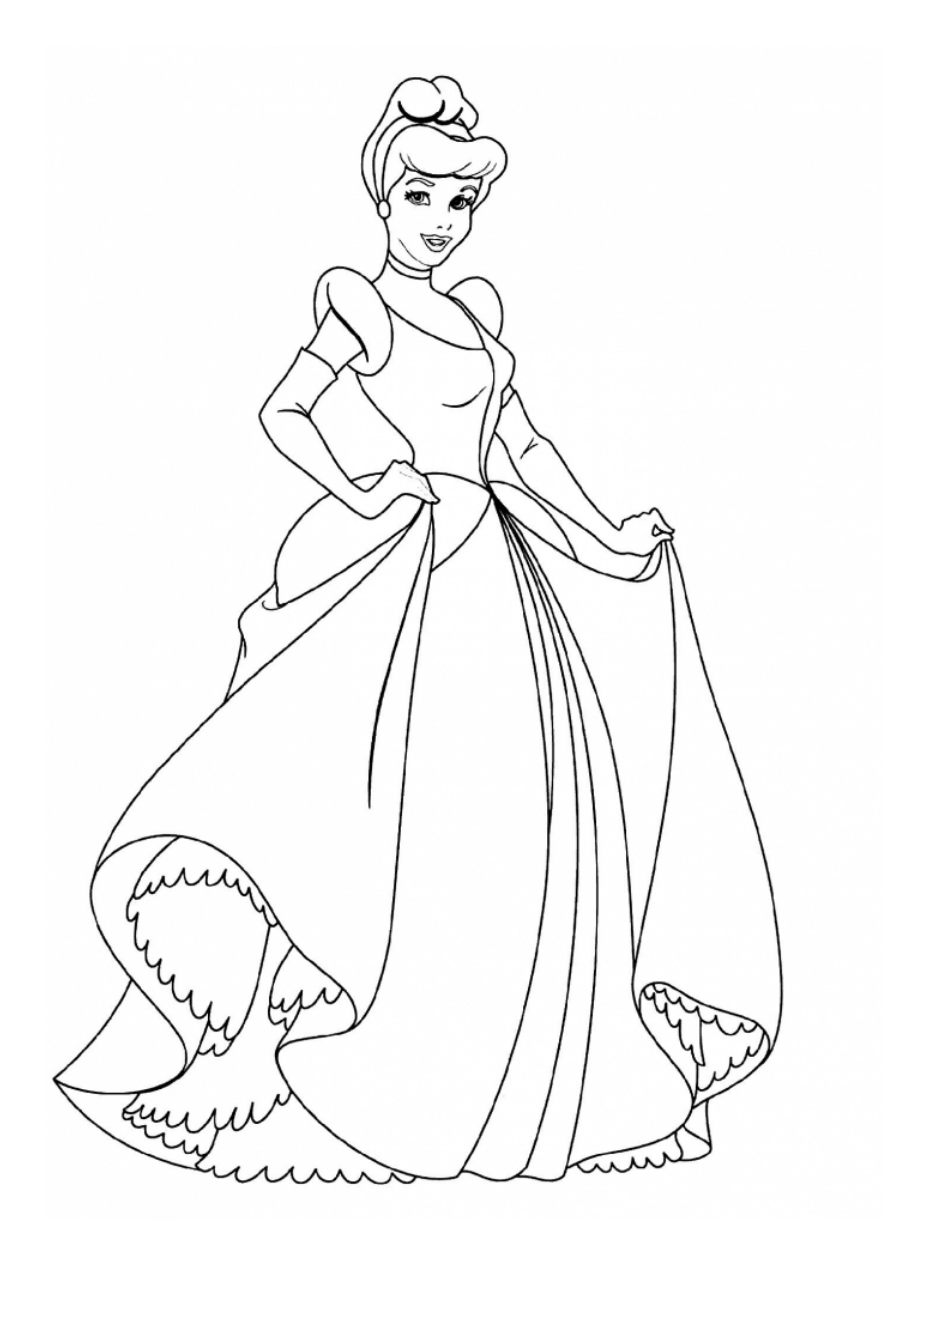 Disney Cinderella Coloring Page - Download and print Cinderella coloring page from TemplateRoller